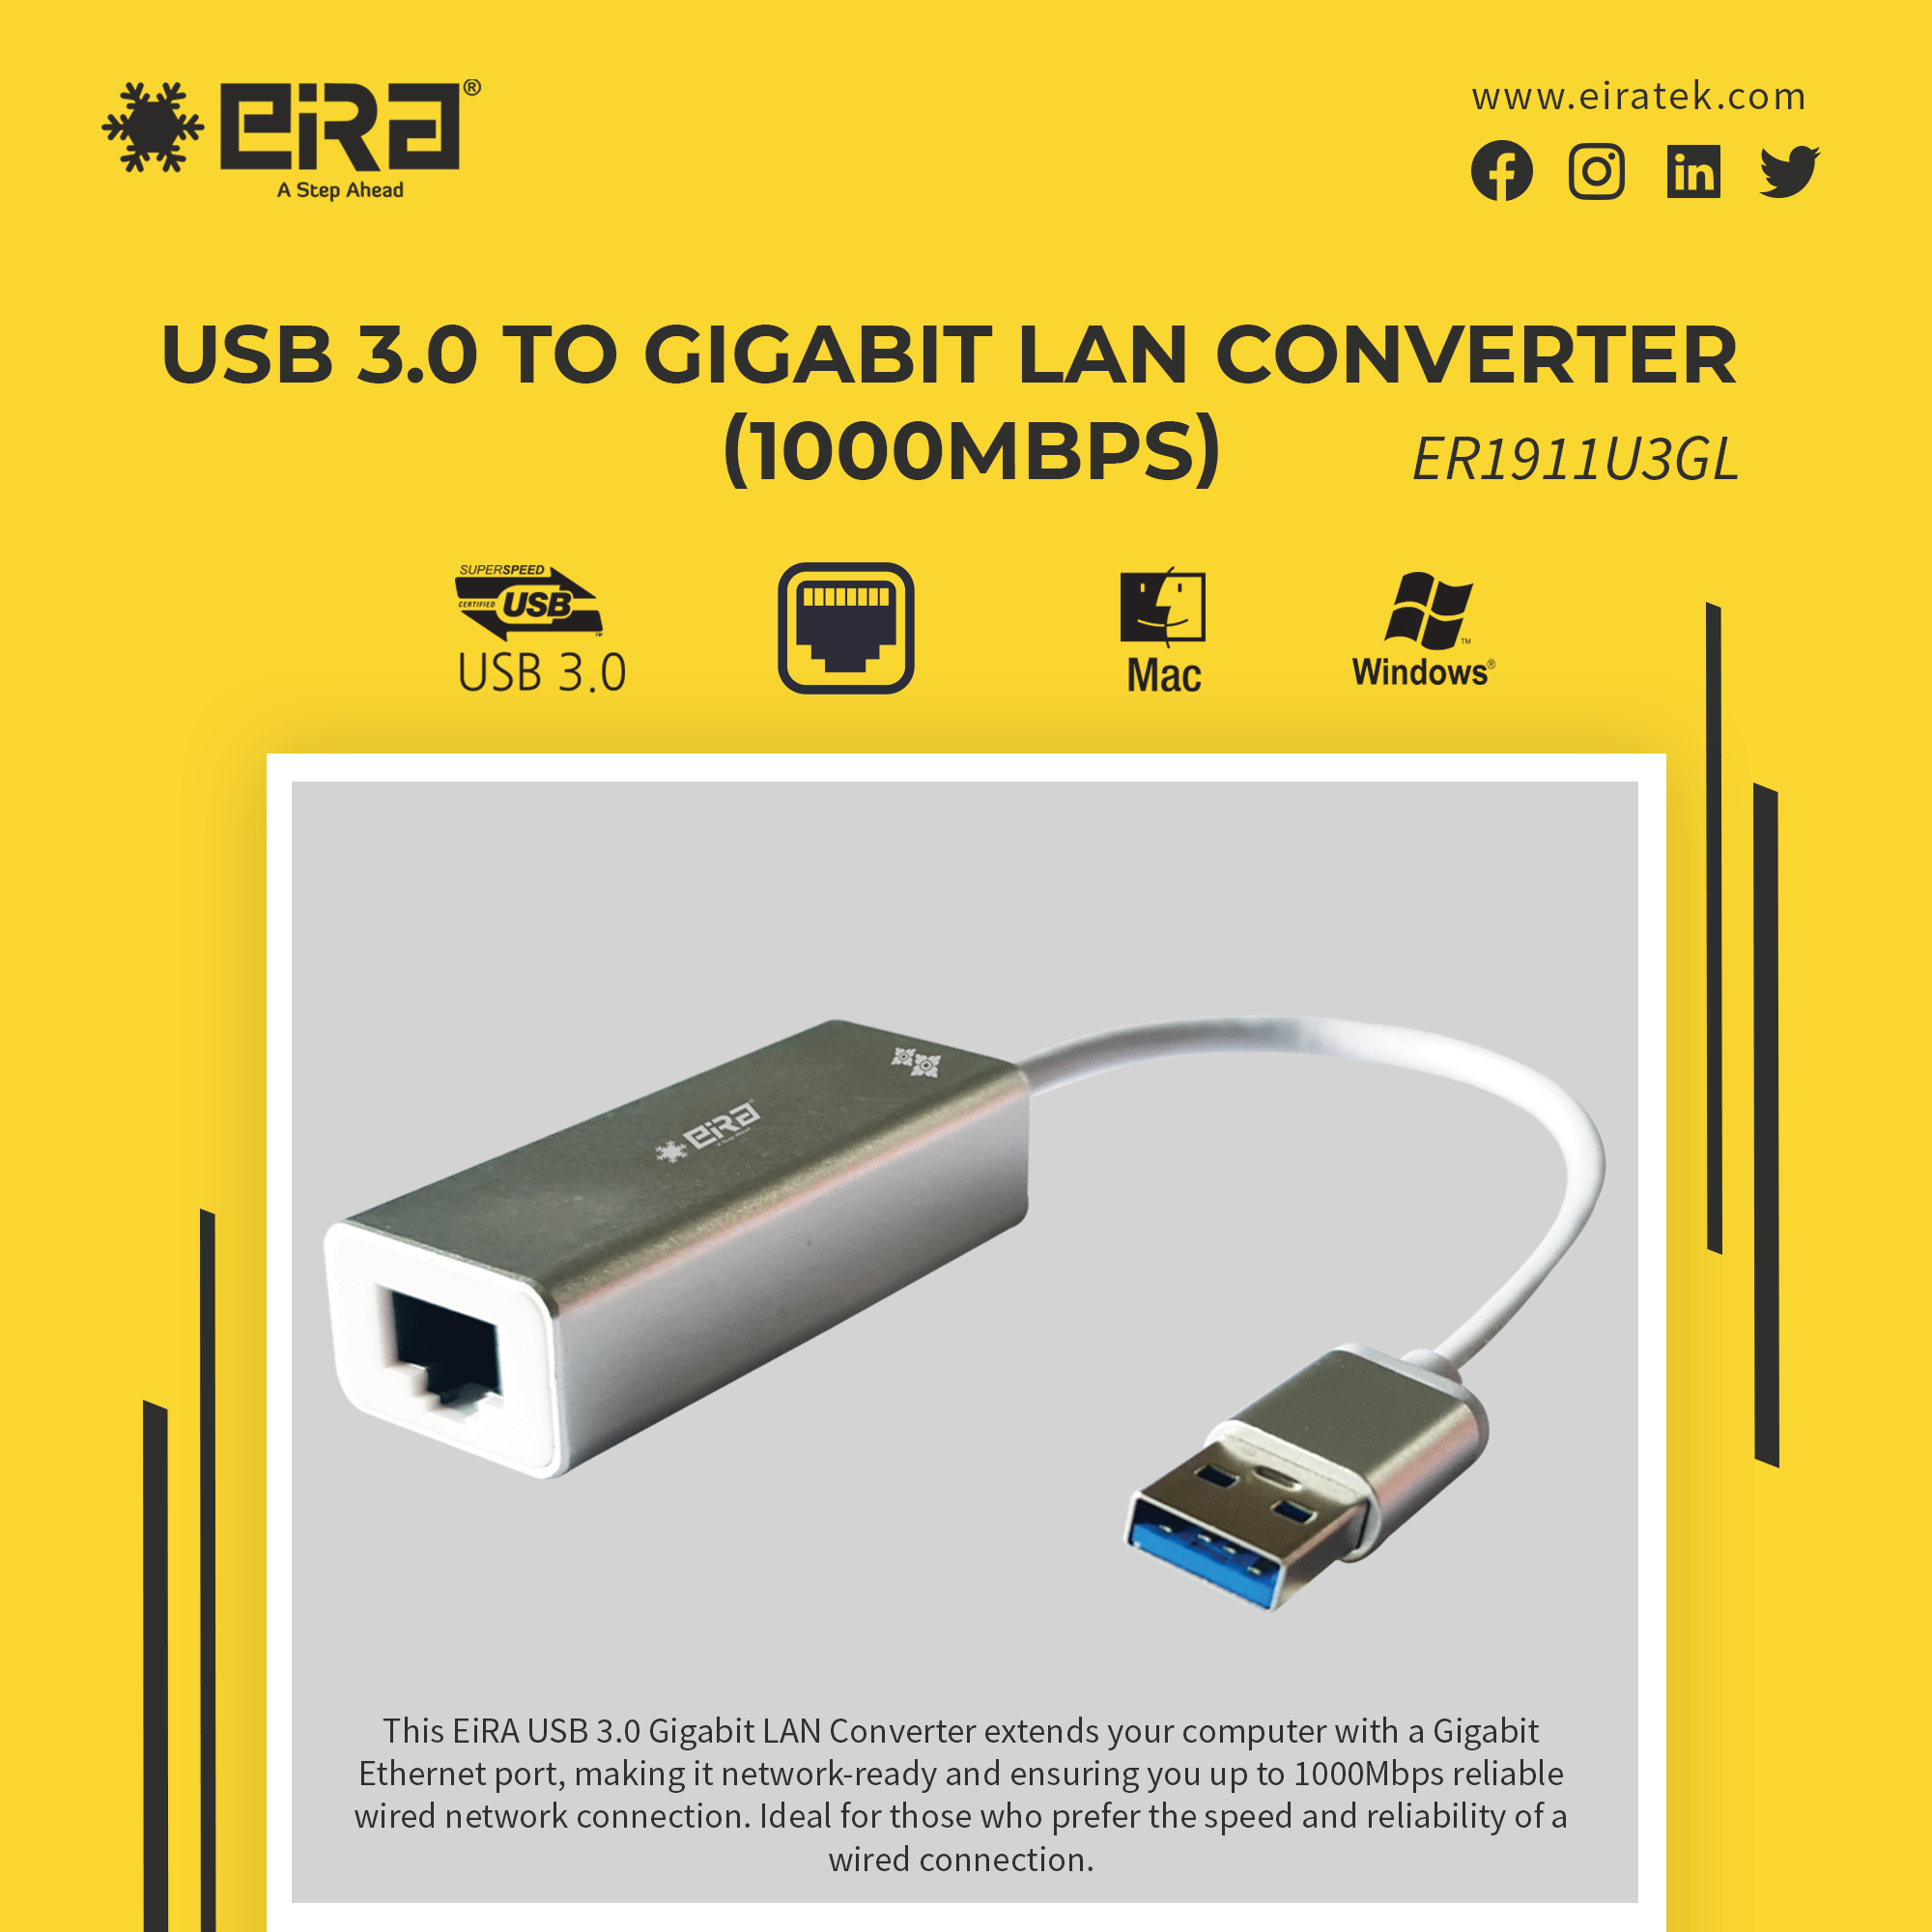 SuperSpeed USB 3.0 LAN Hub - Type-C Ready